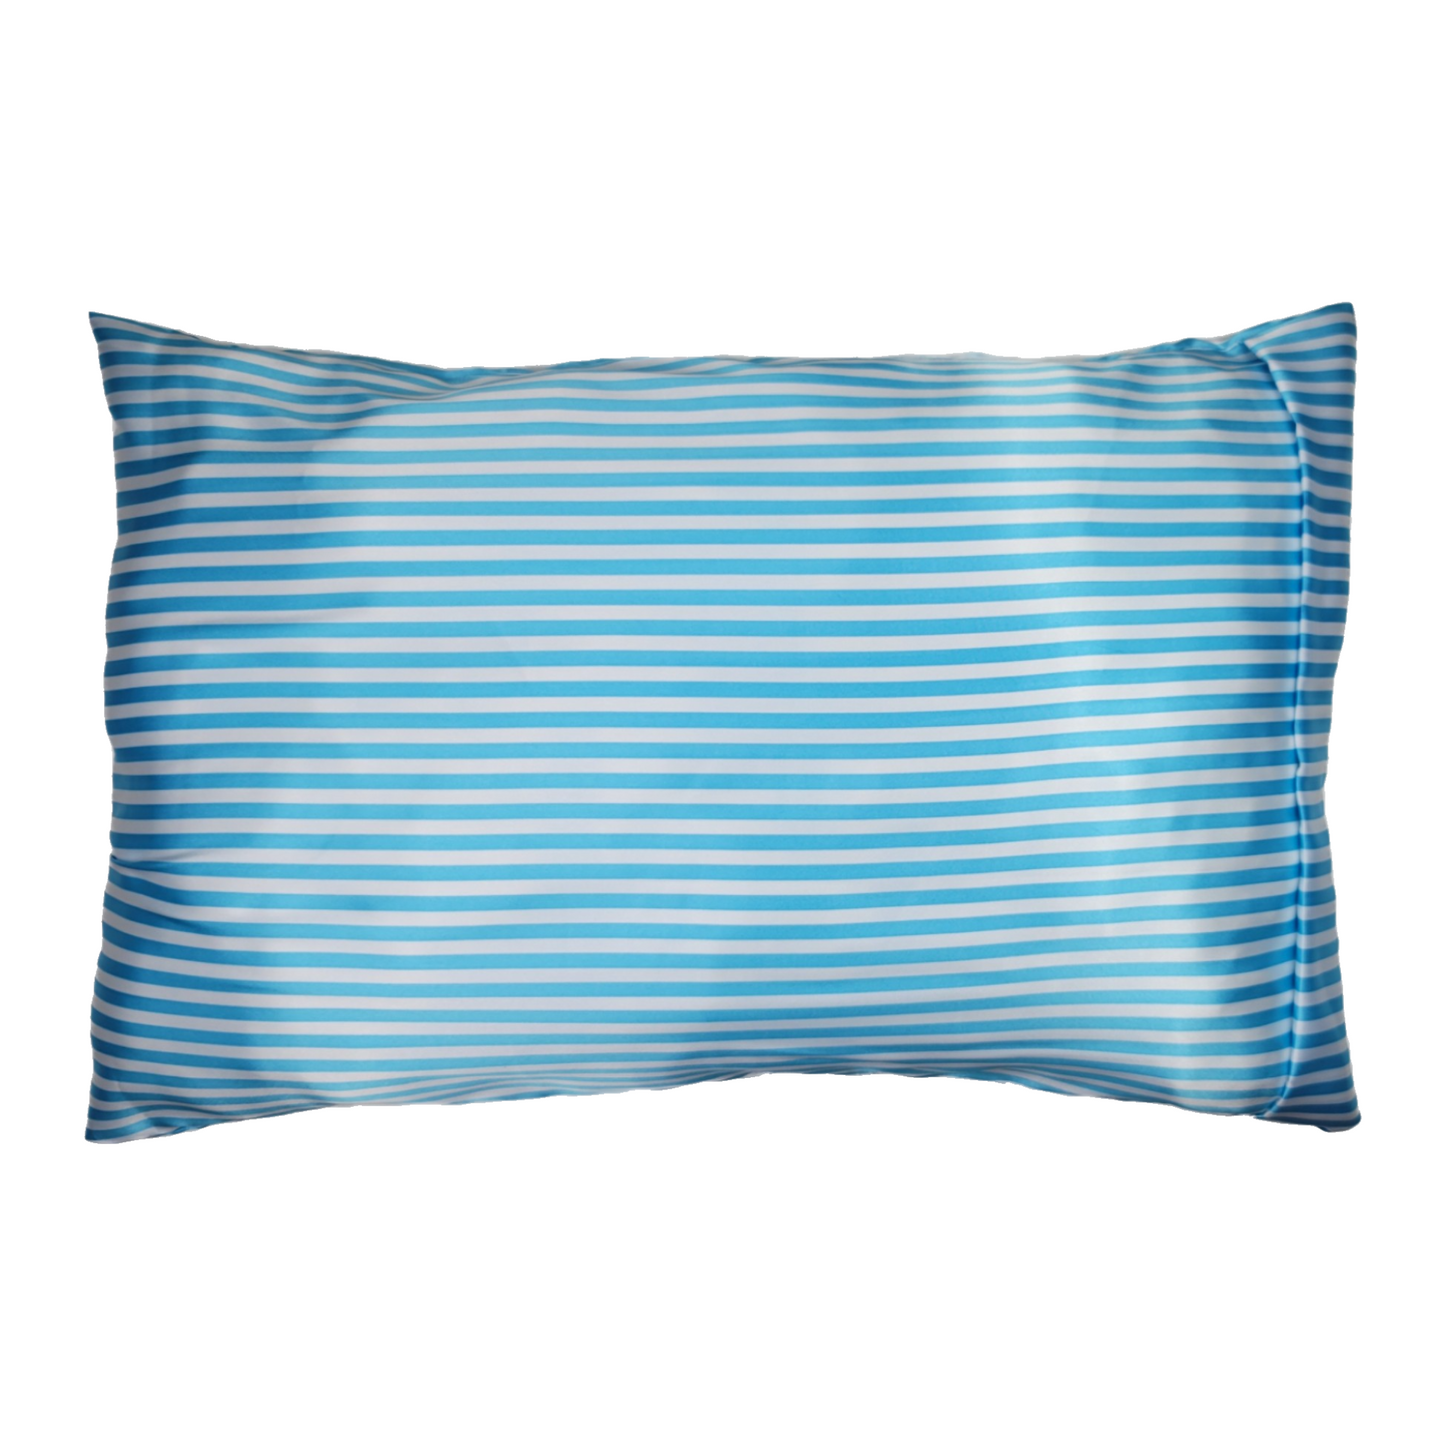 Luxe Satin Zippered Pillowcase - Turquoise/White Stripe